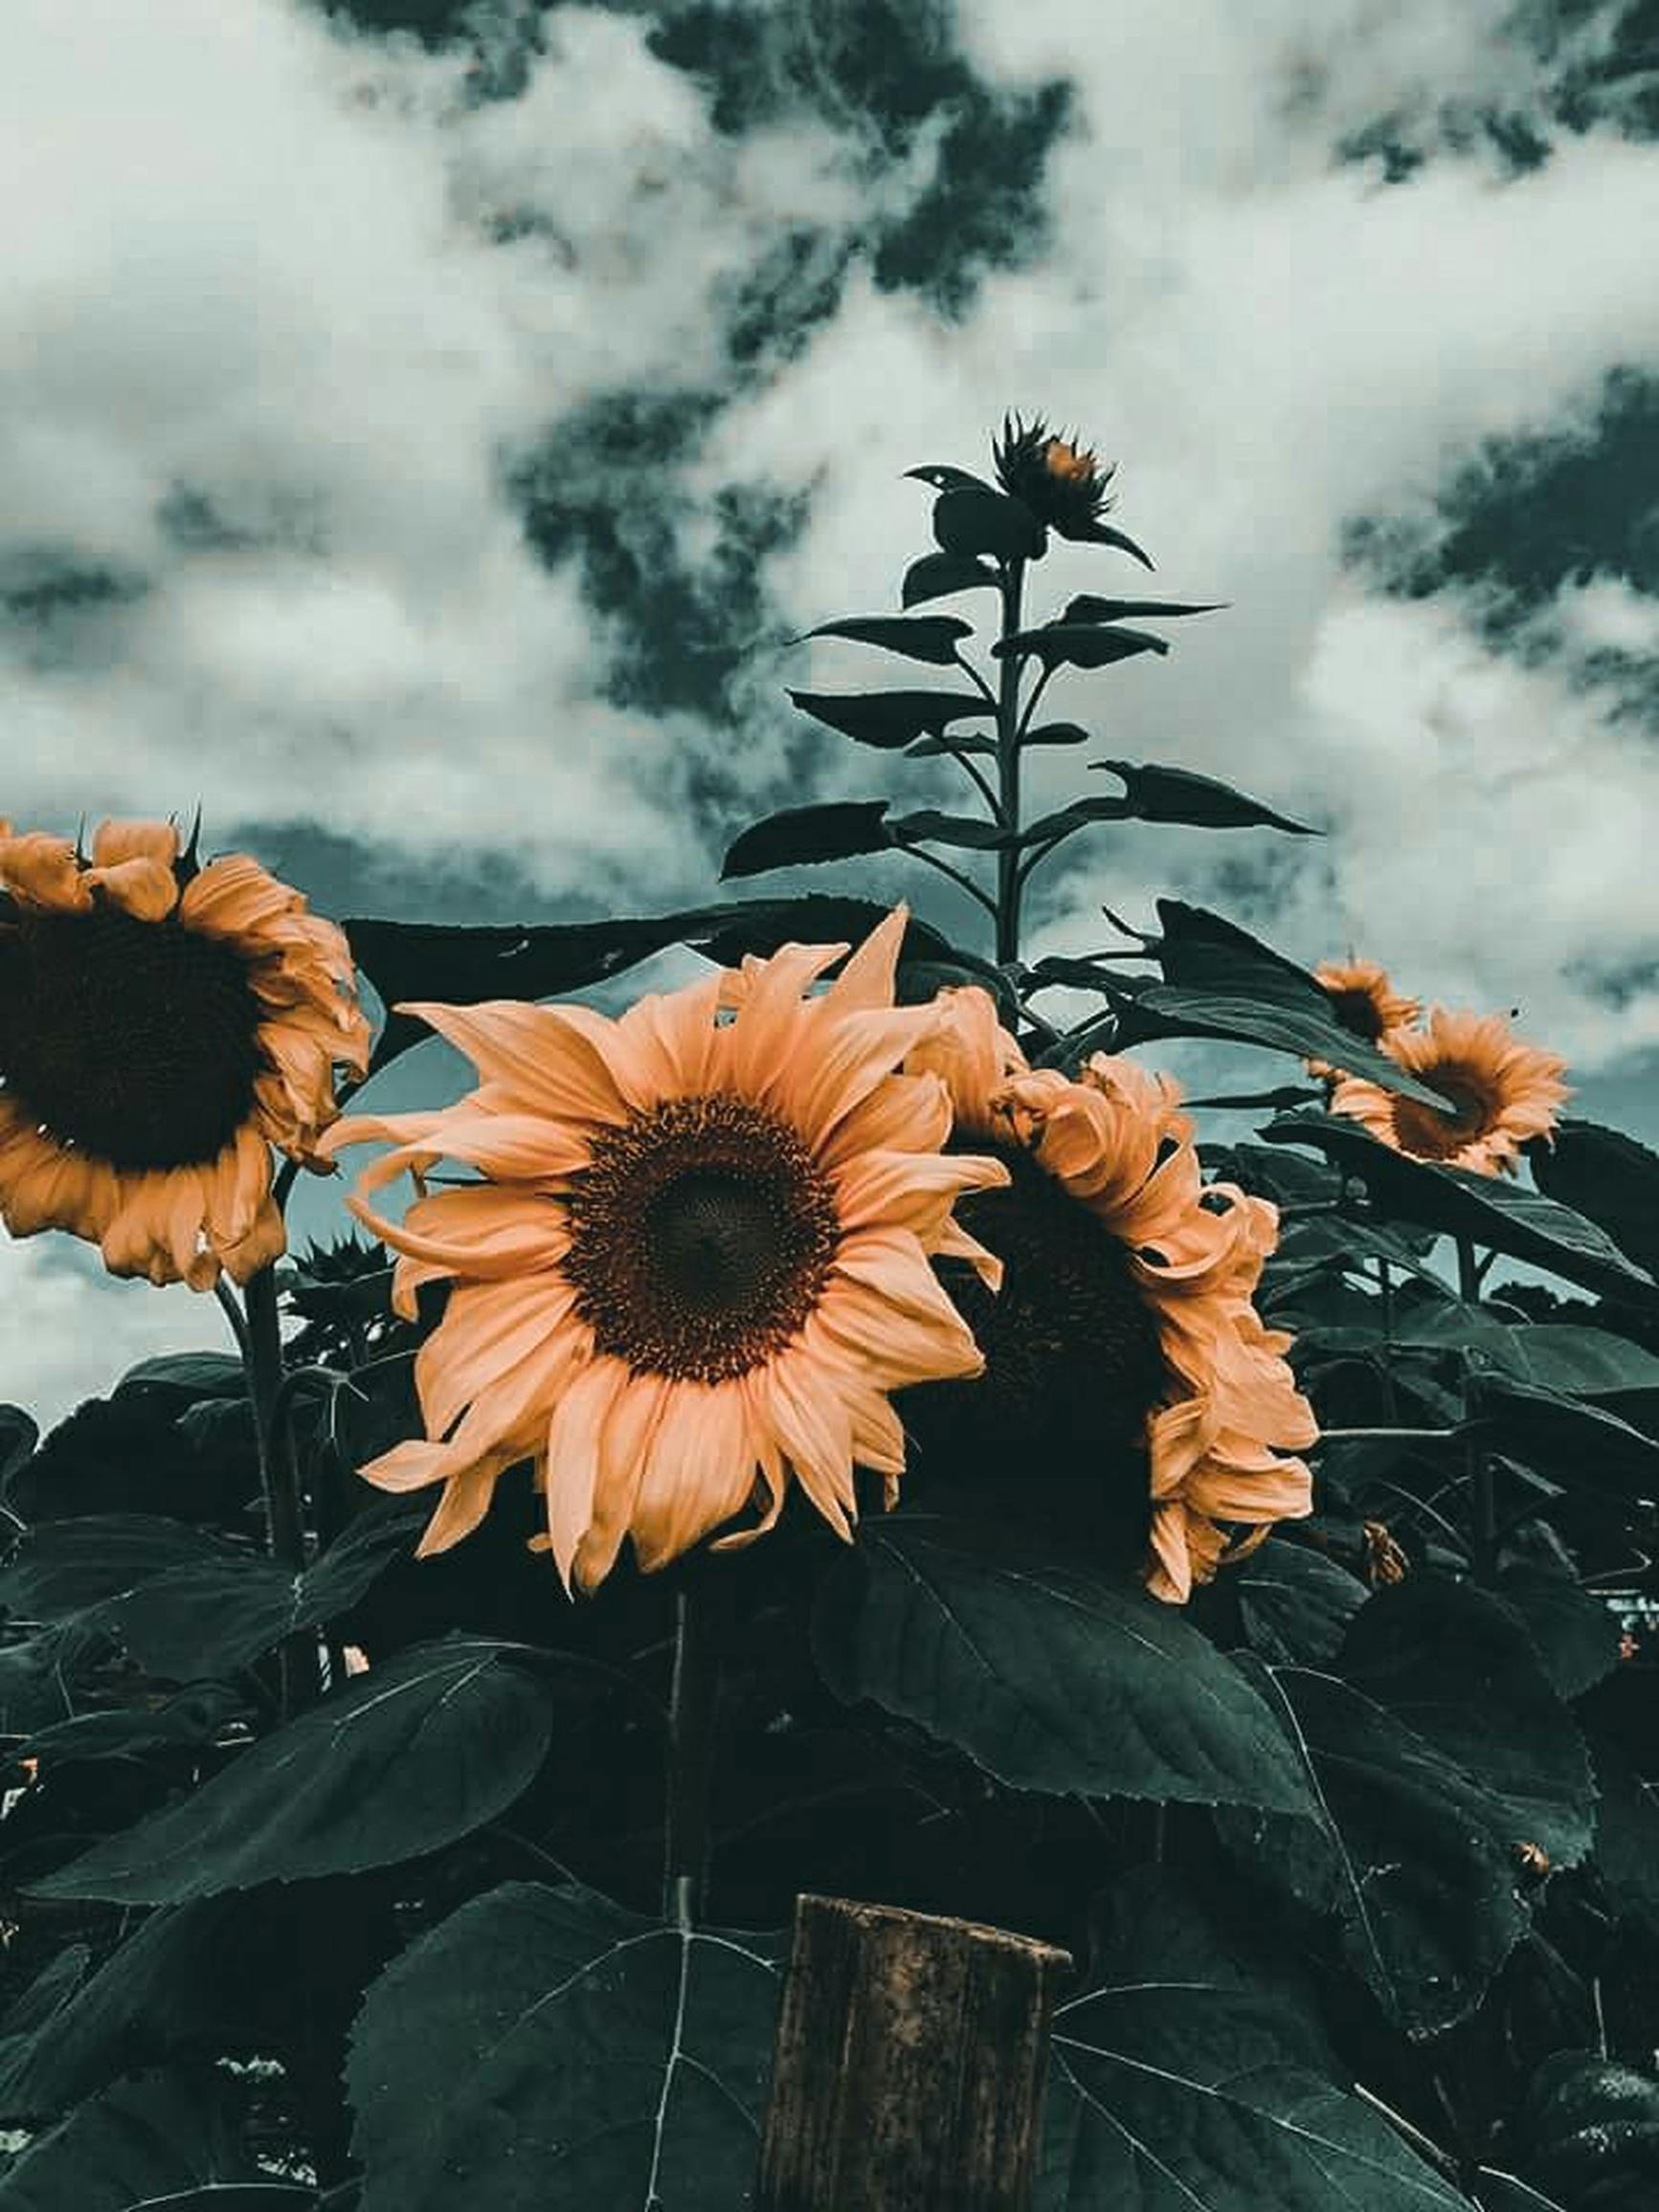 Foto stok gratis tentang berkembang, bidang, bunga matahari